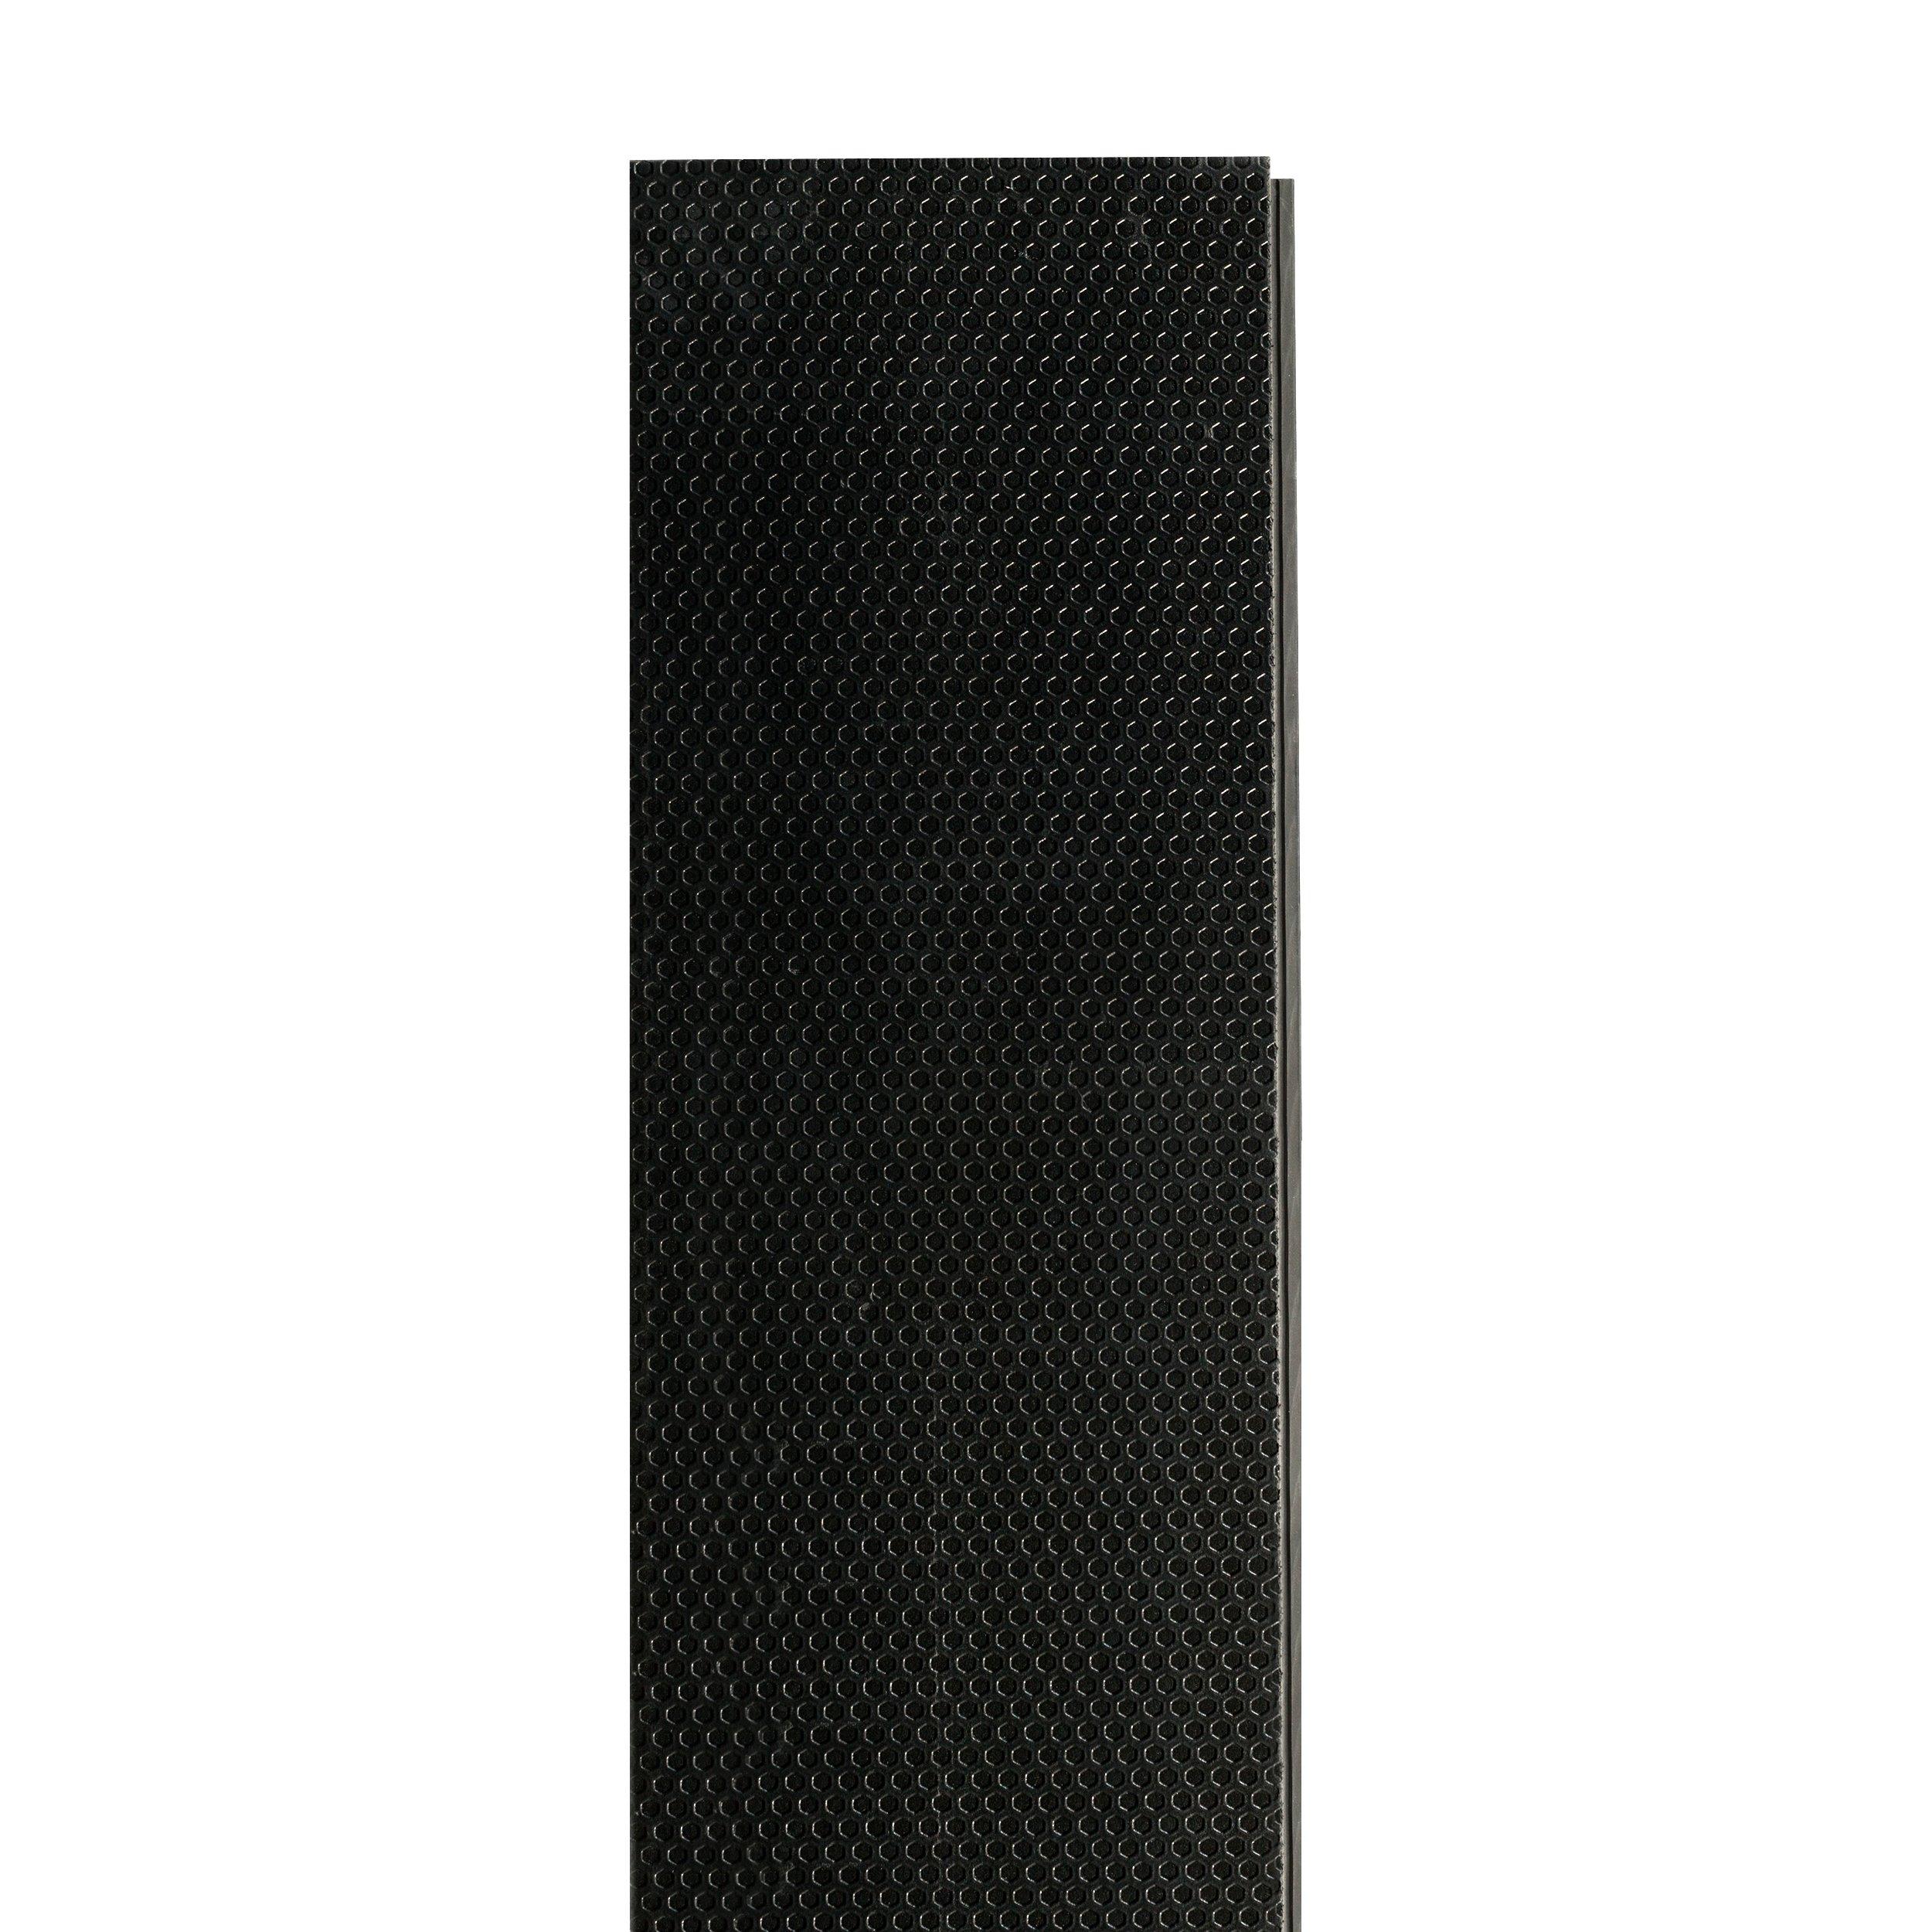 Hillside Sable Rigid Core Luxury Vinyl Plank - Foam Back